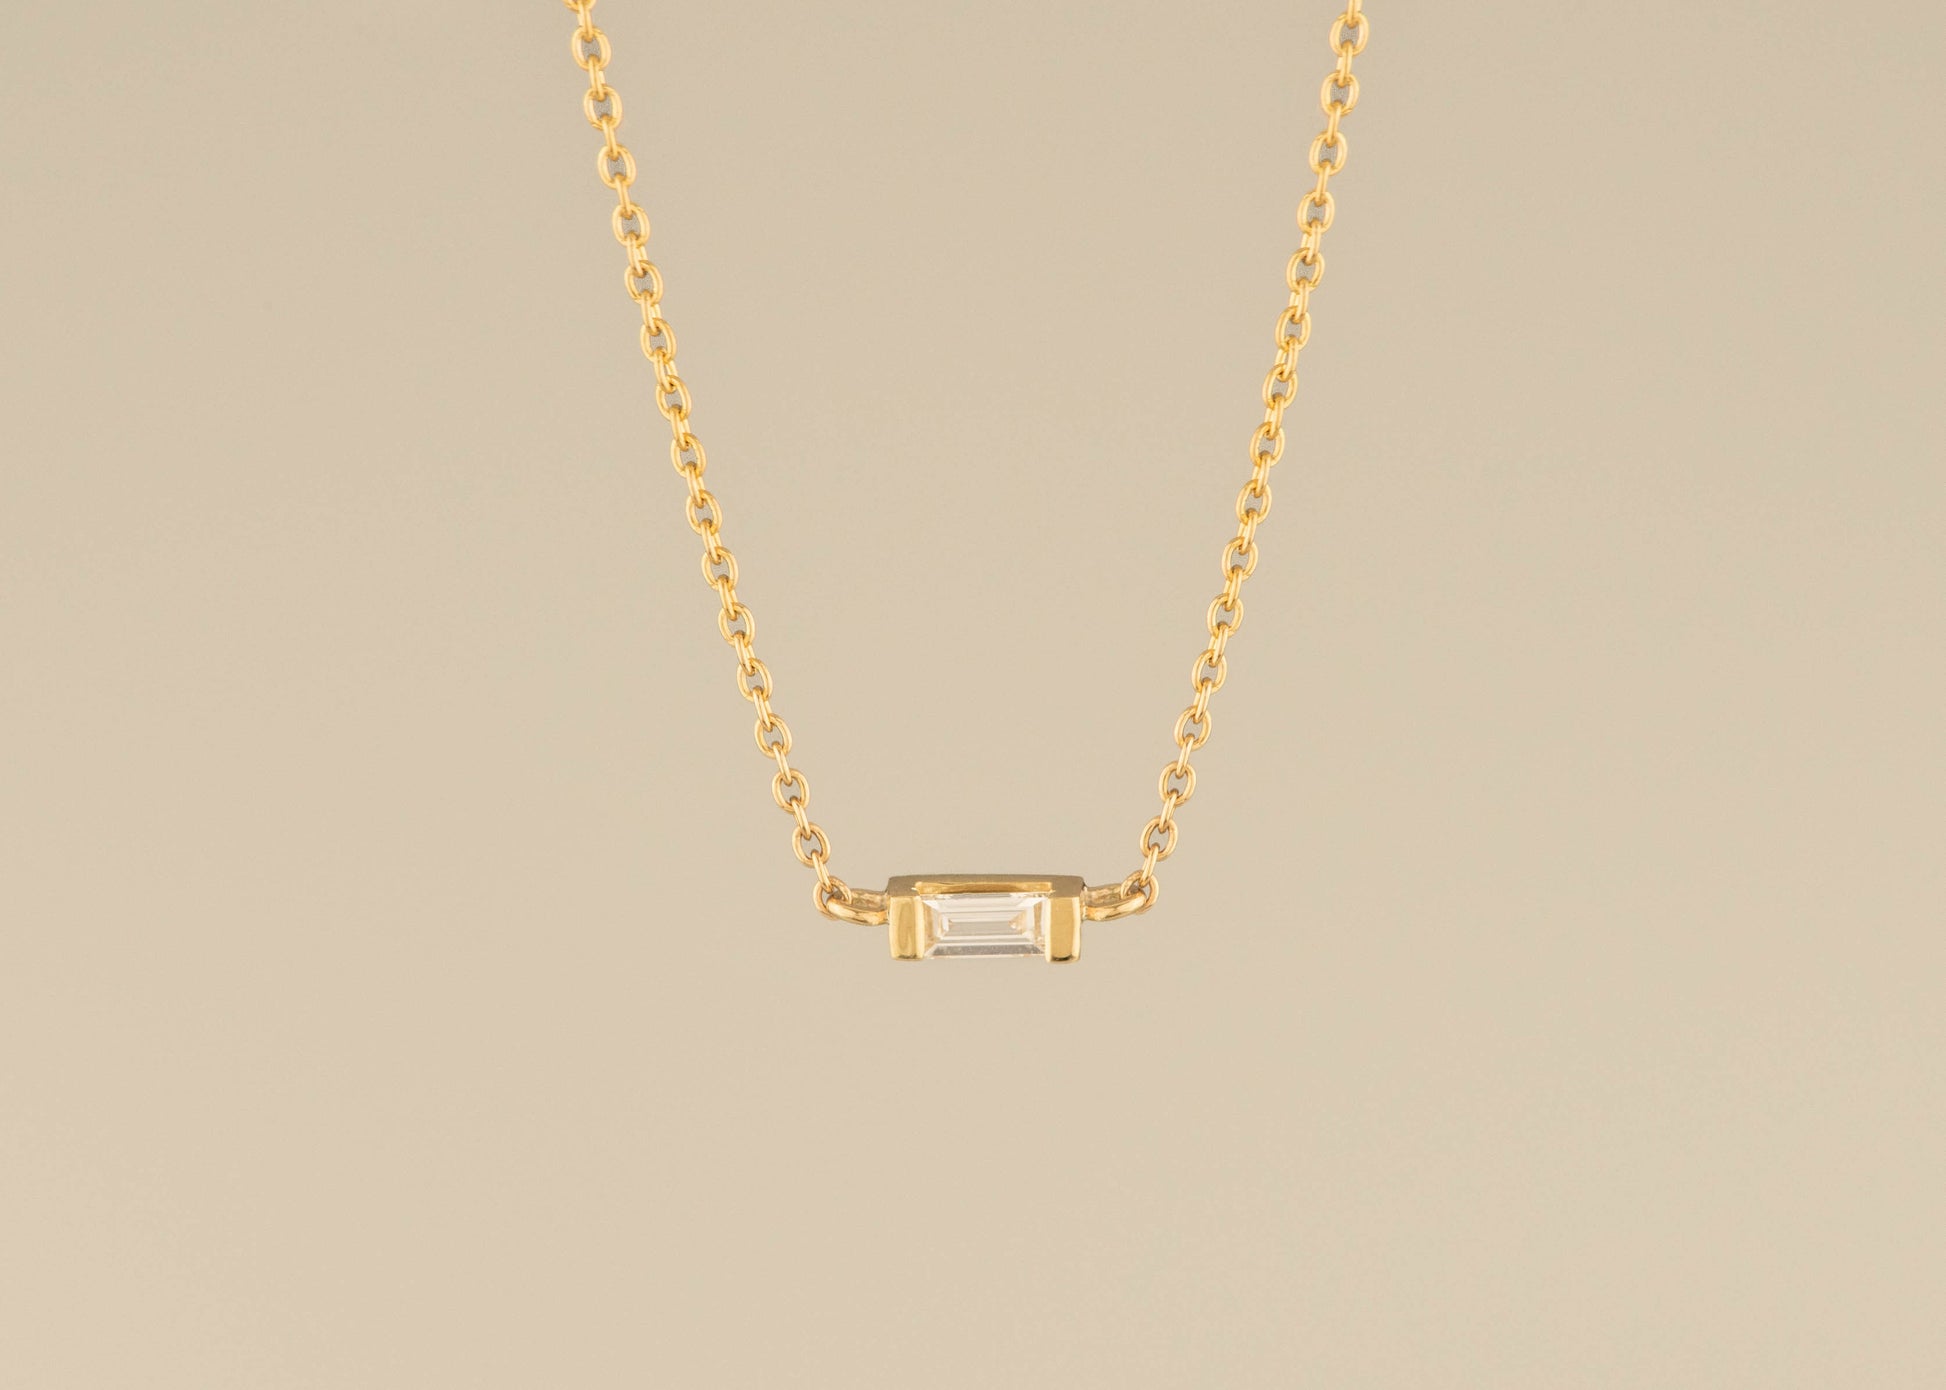 East-West Diamond Baguette Necklace